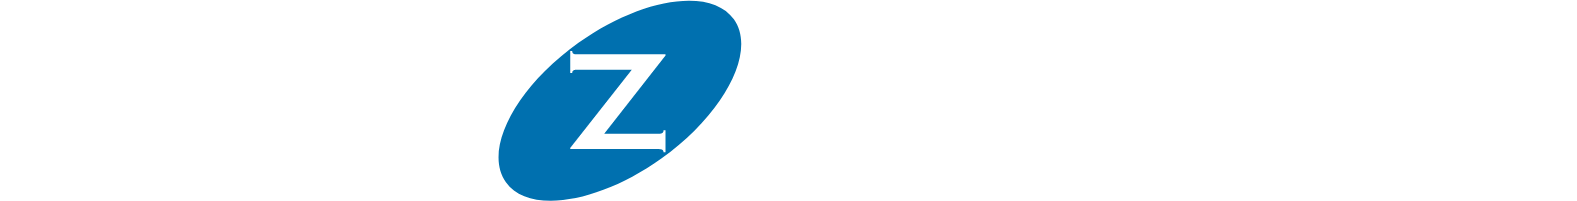 La-Z-Boy
 logo large for dark backgrounds (transparent PNG)